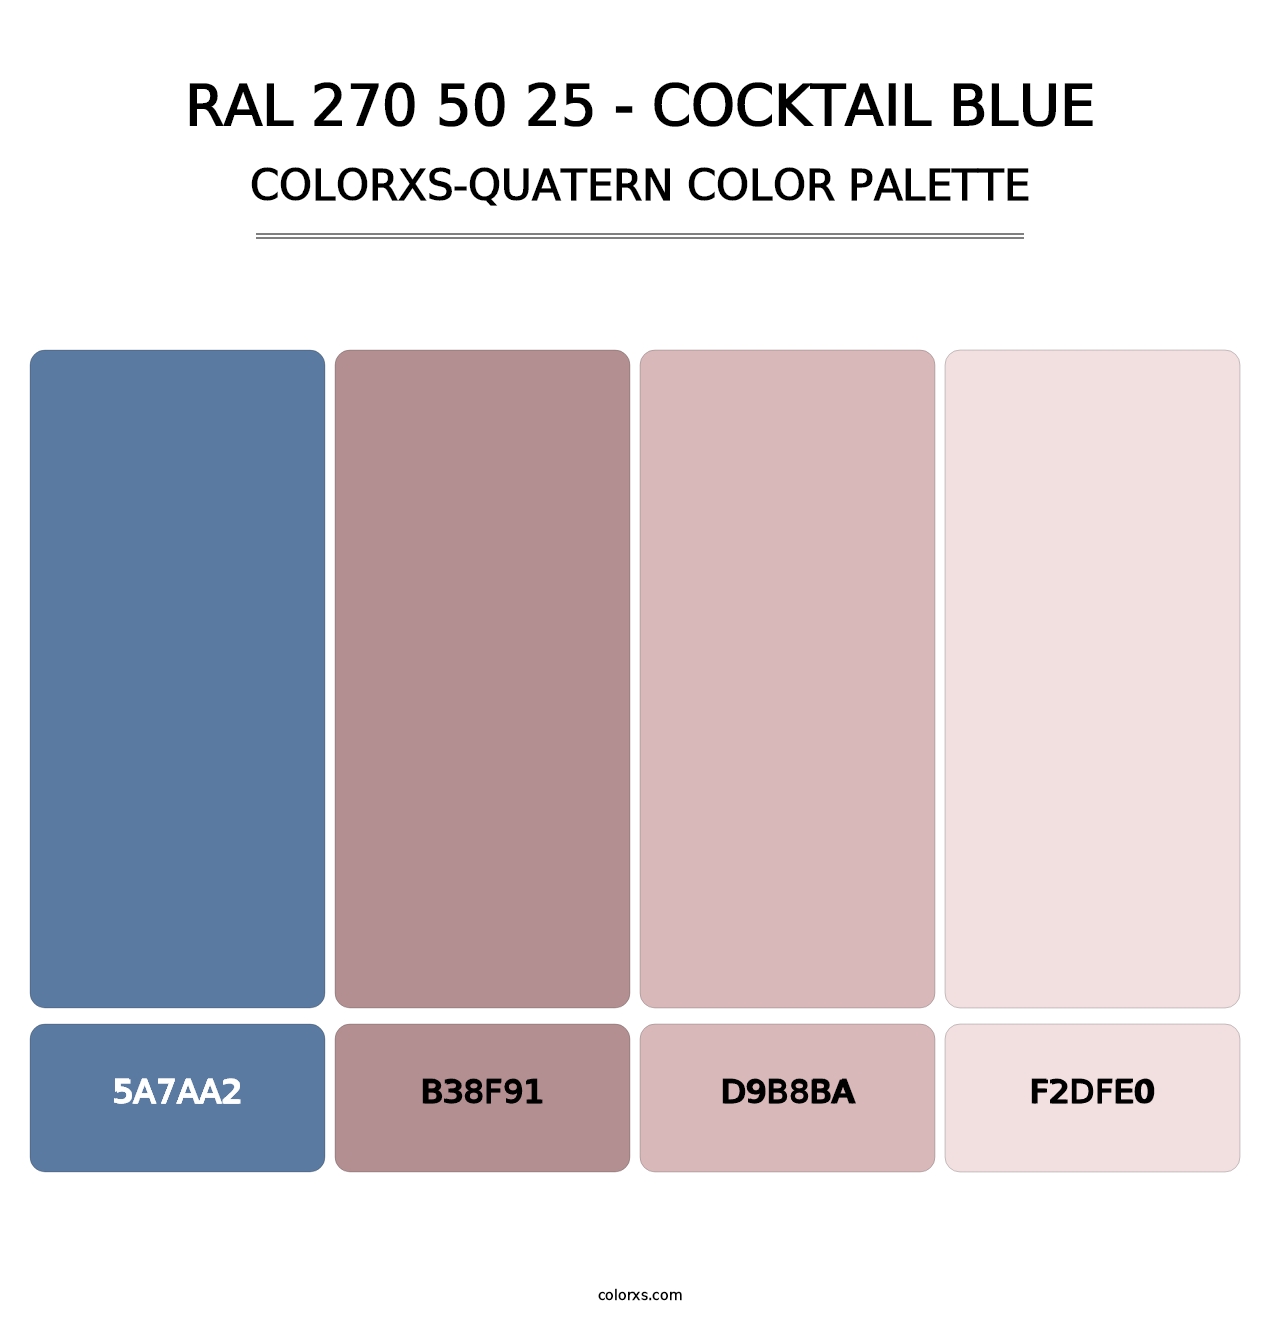 RAL 270 50 25 - Cocktail Blue - Colorxs Quatern Palette